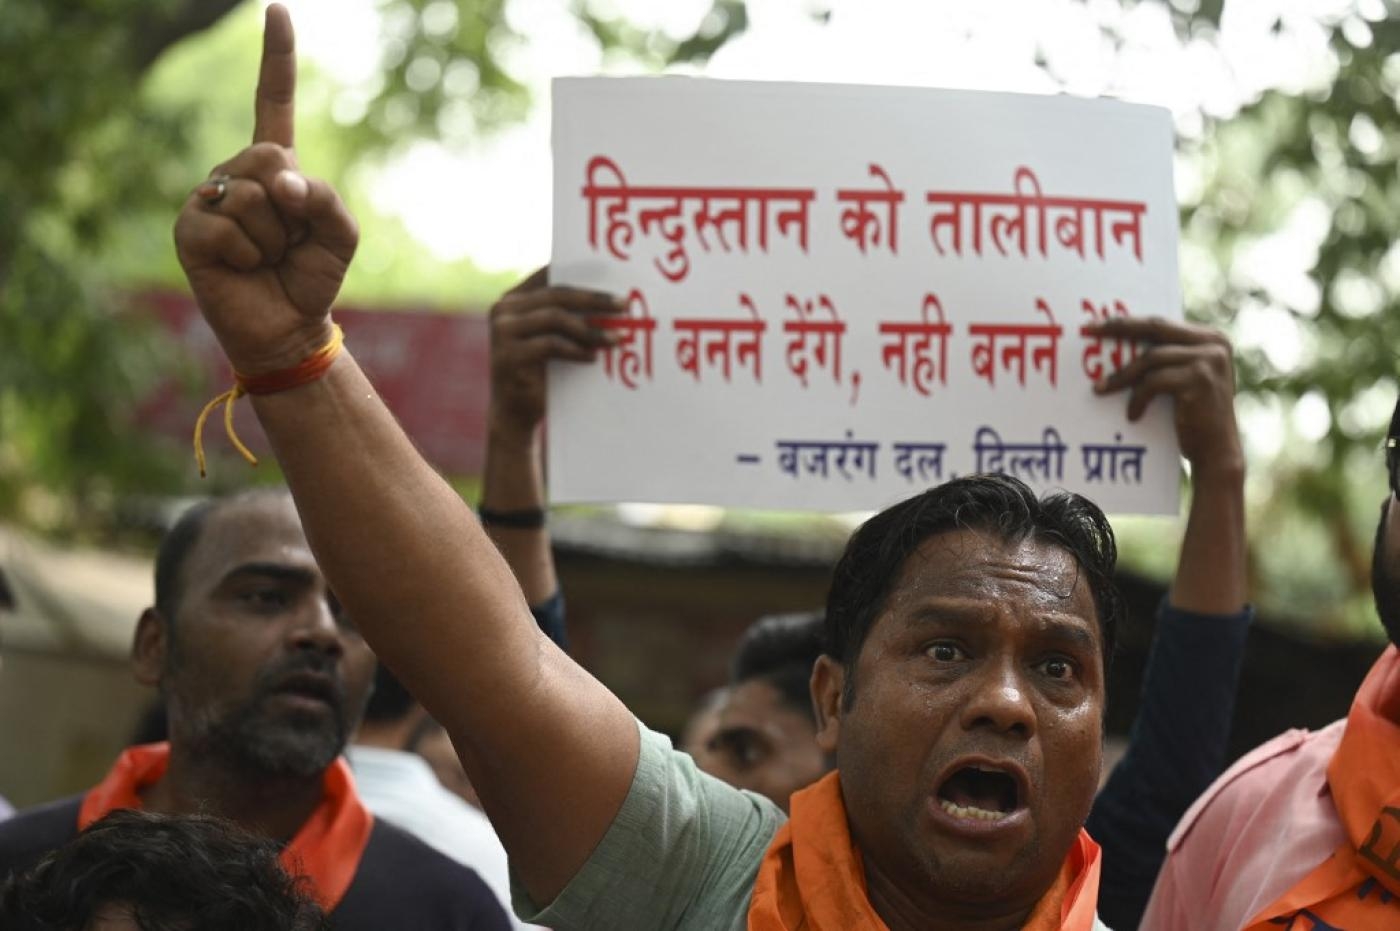 Manifestation à New Delhi après le meurtre d’un tailleur hindou, le 29 juin 2022 (AFP)